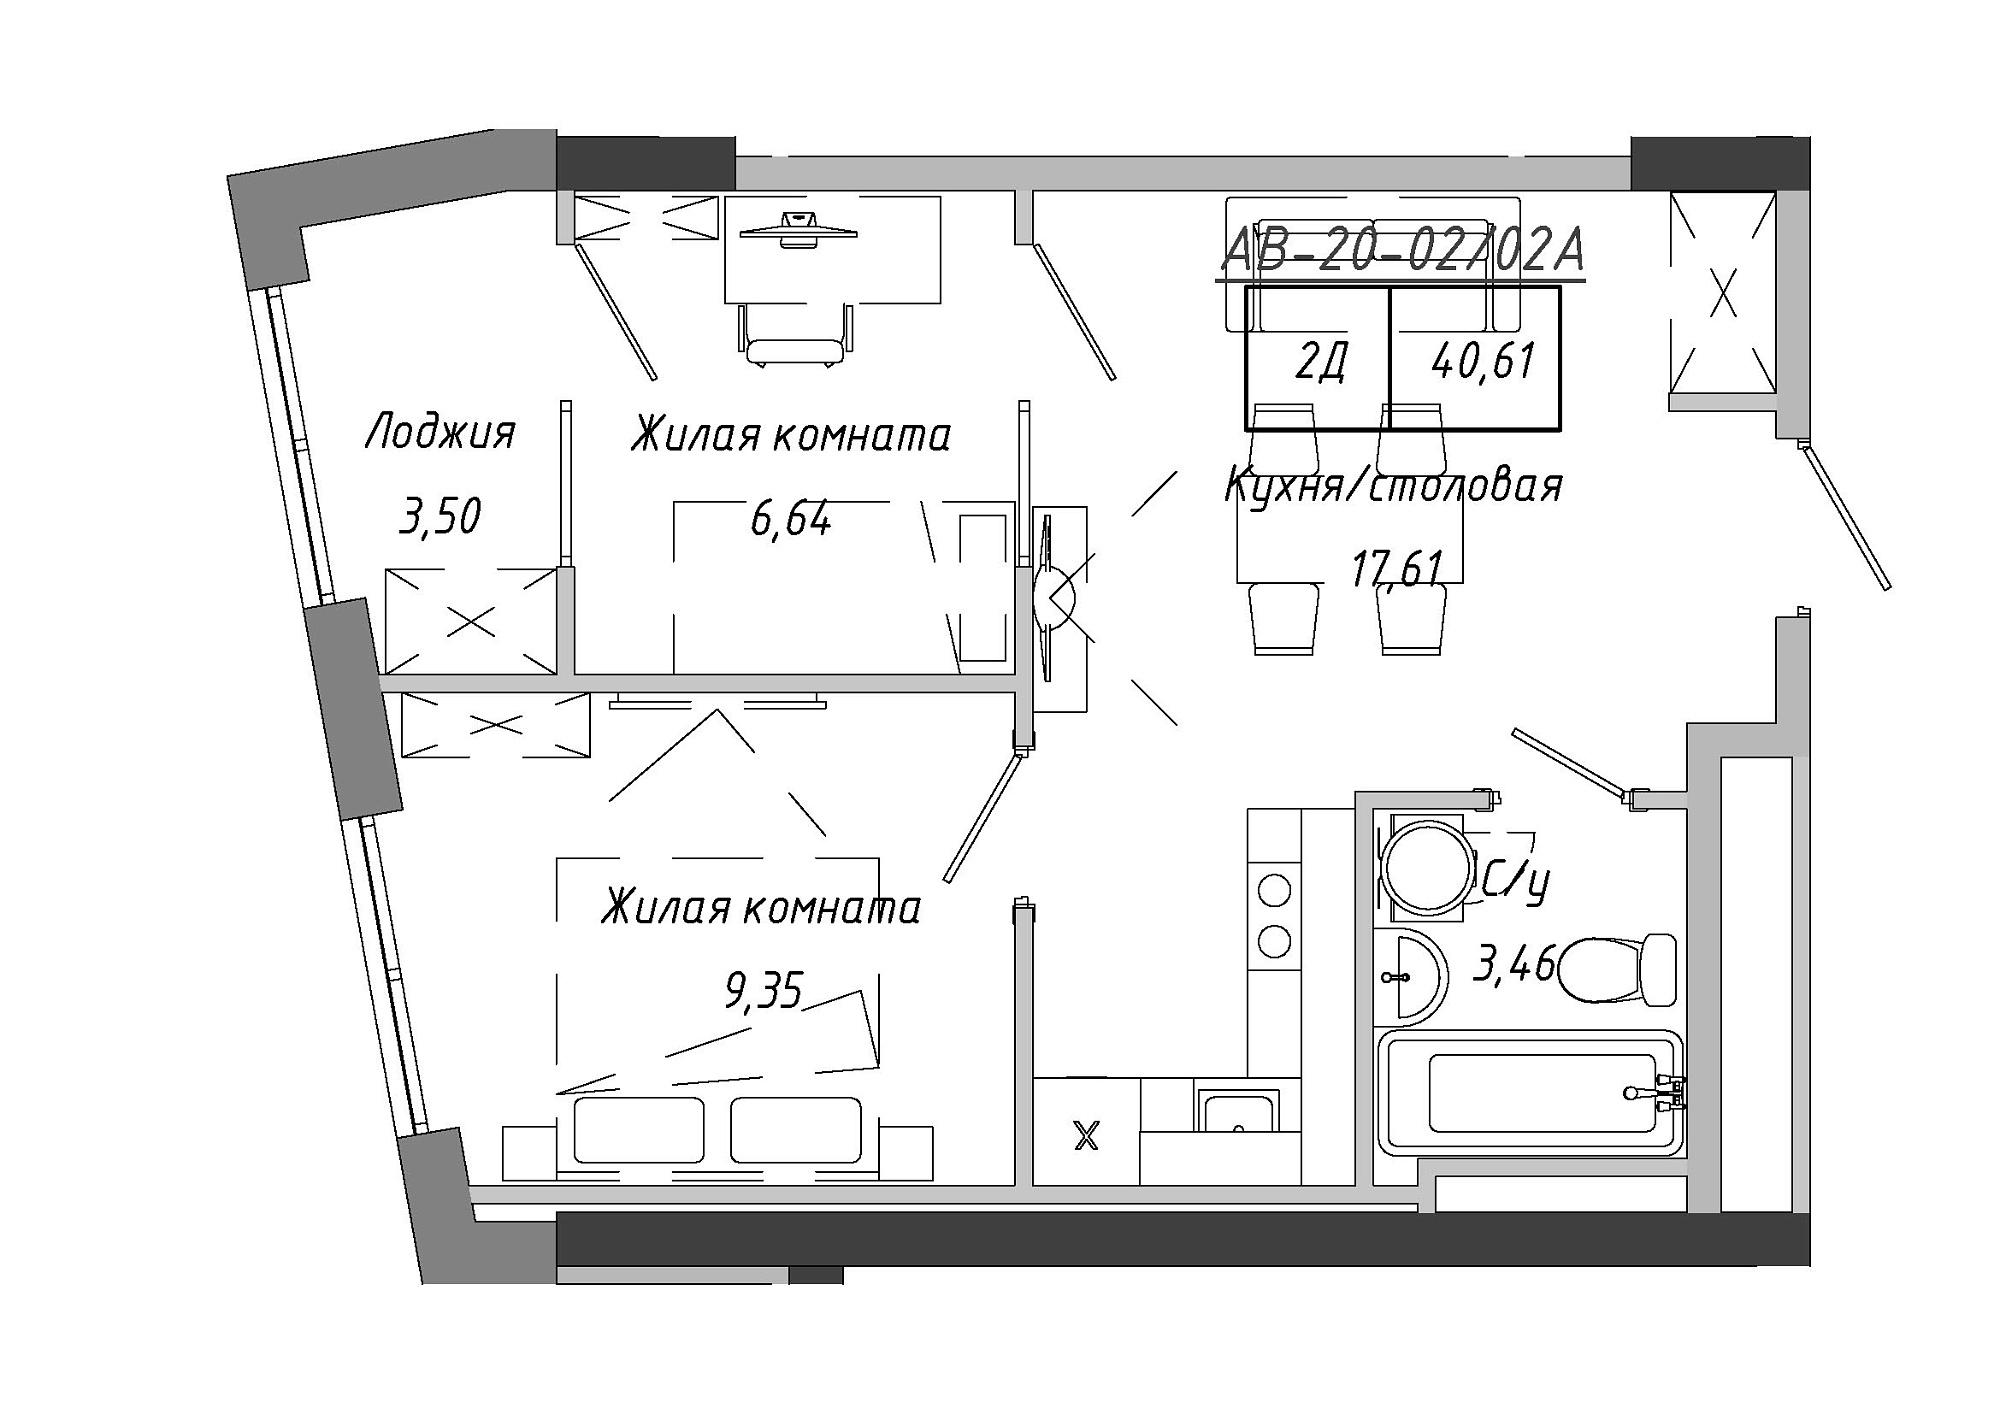 Планування 2-к квартира площею 40.61м2, AB-20-02/0002а.